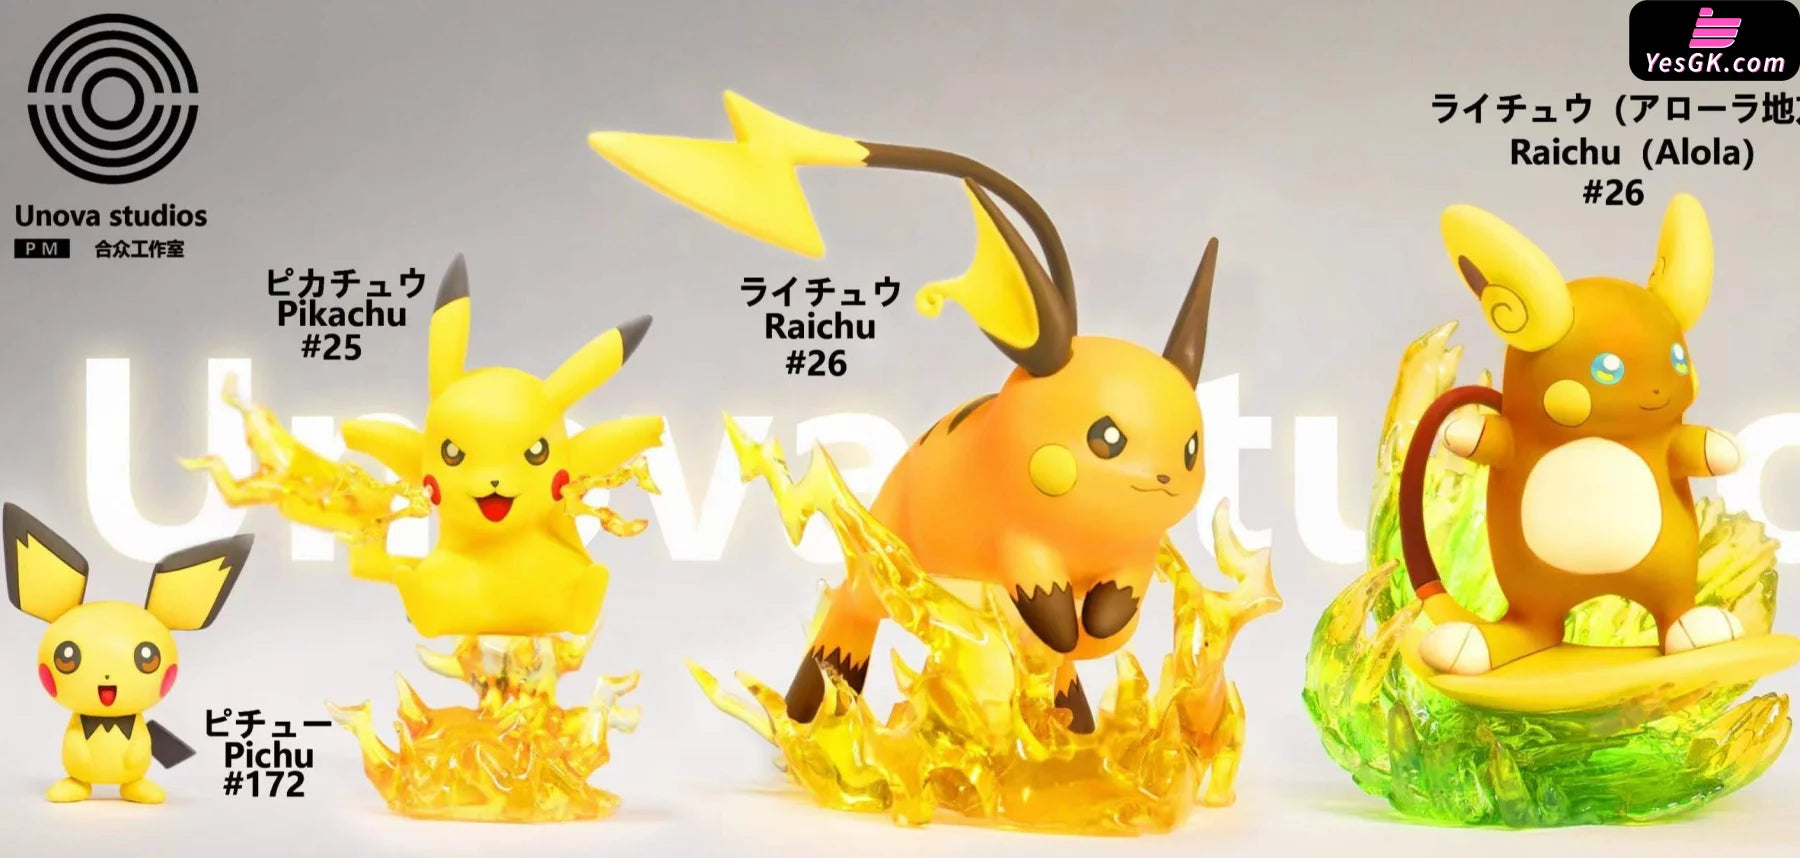 Pokemon EGG Studio - Pikachu Evolution